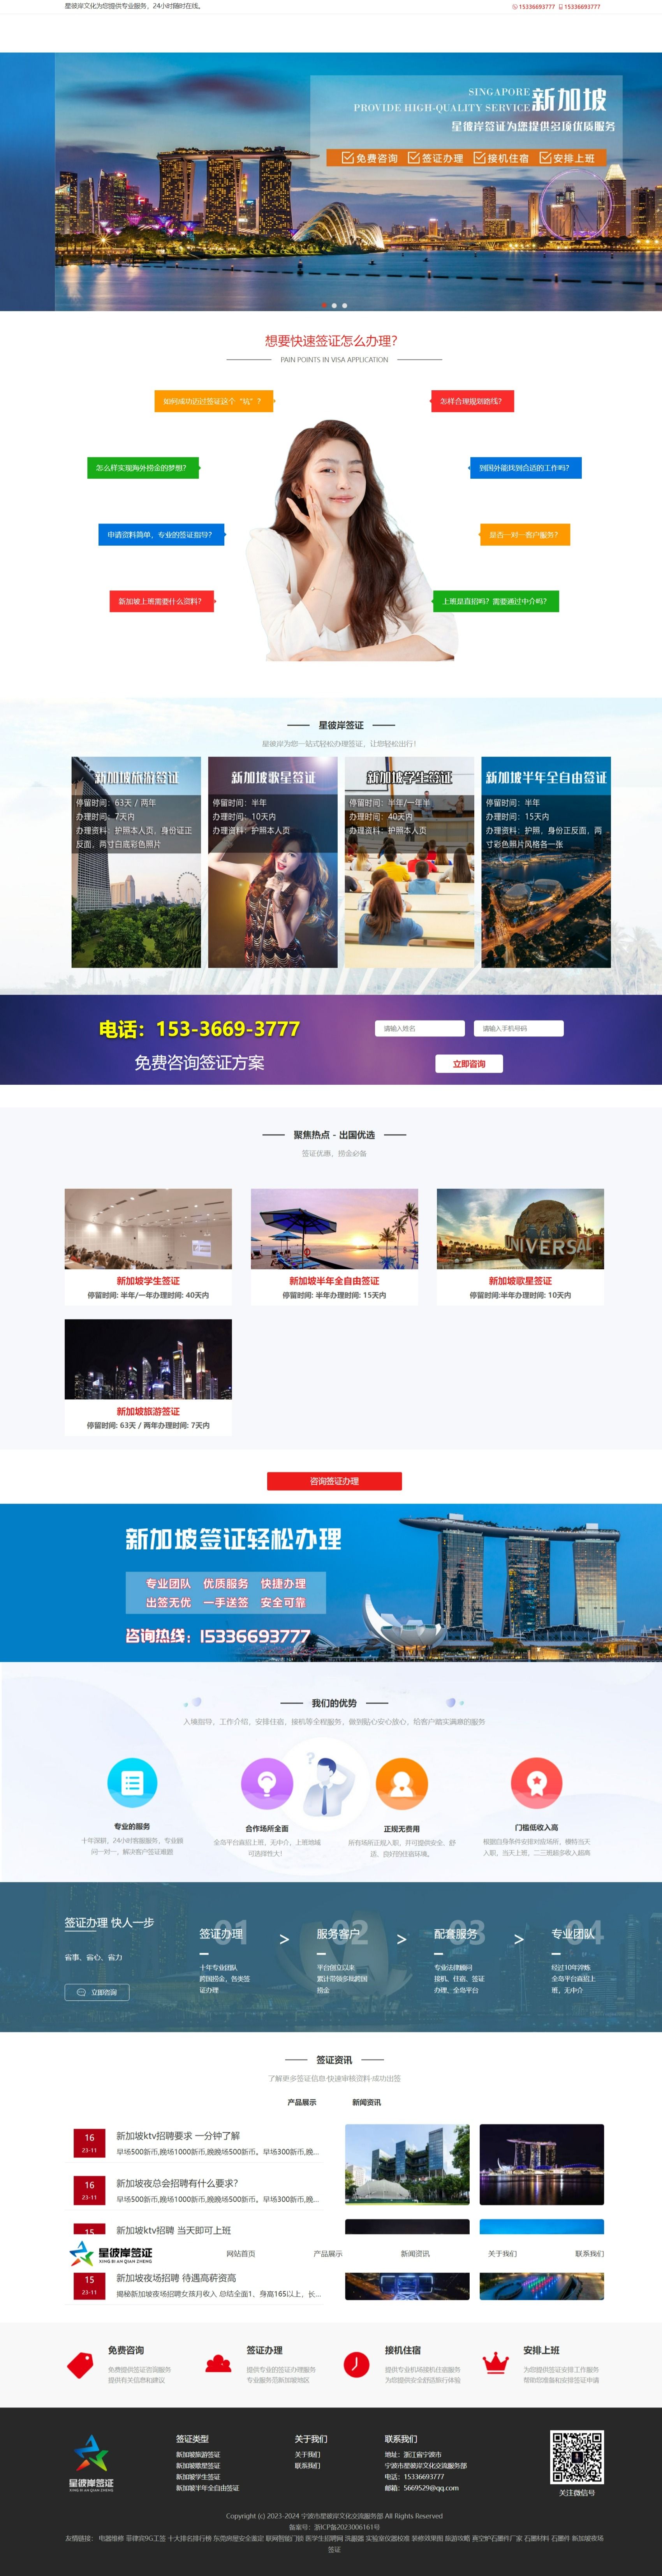 星彼岸签证网站设计 网站建设案例